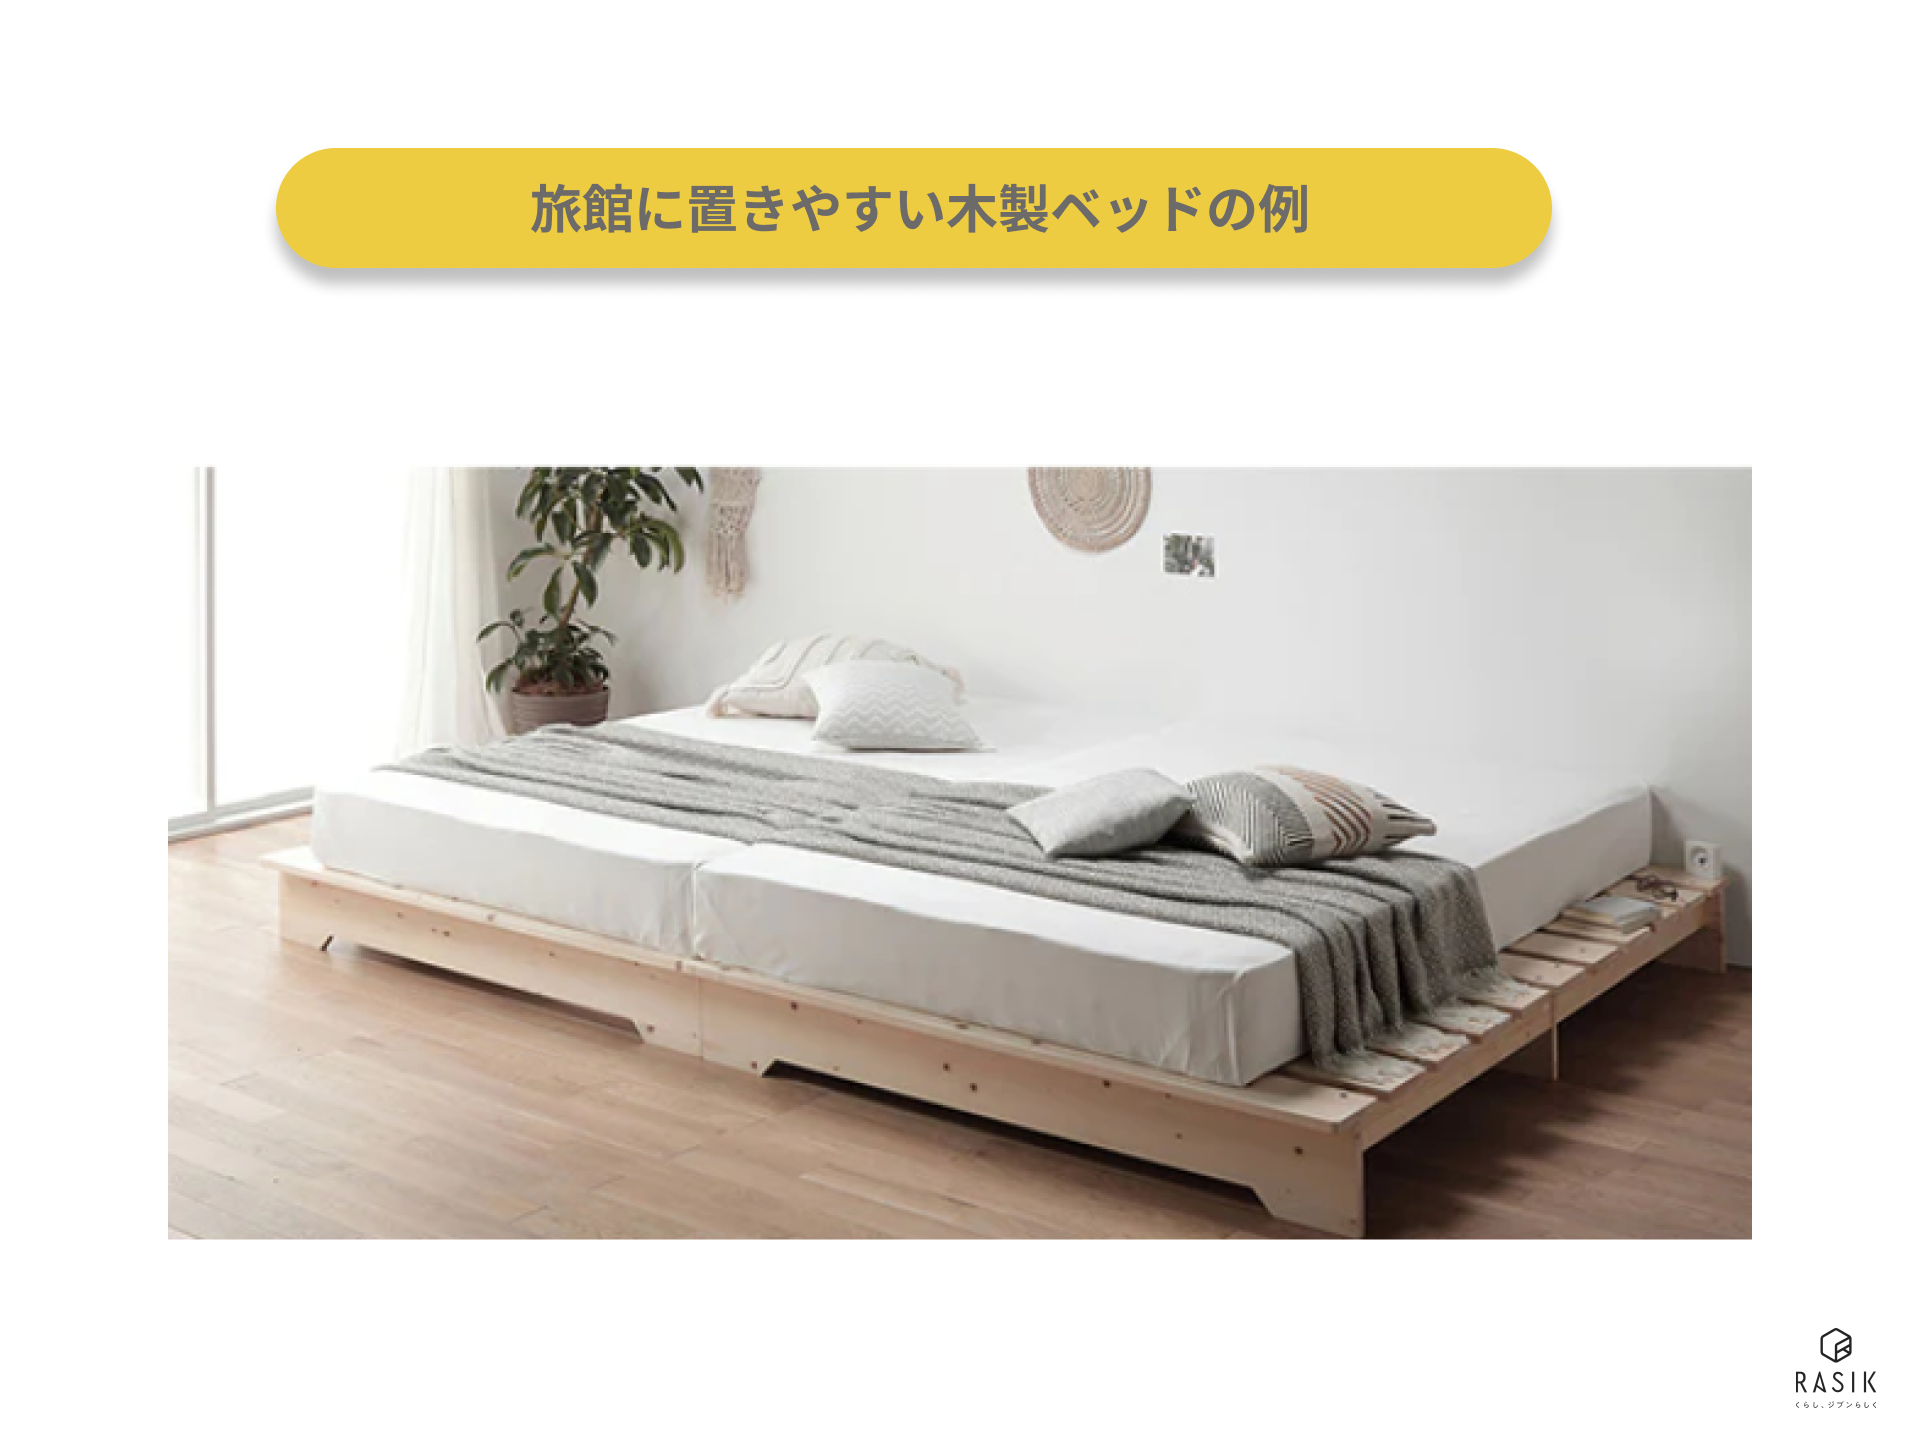 旅館に置きやすい木製ベッドの例